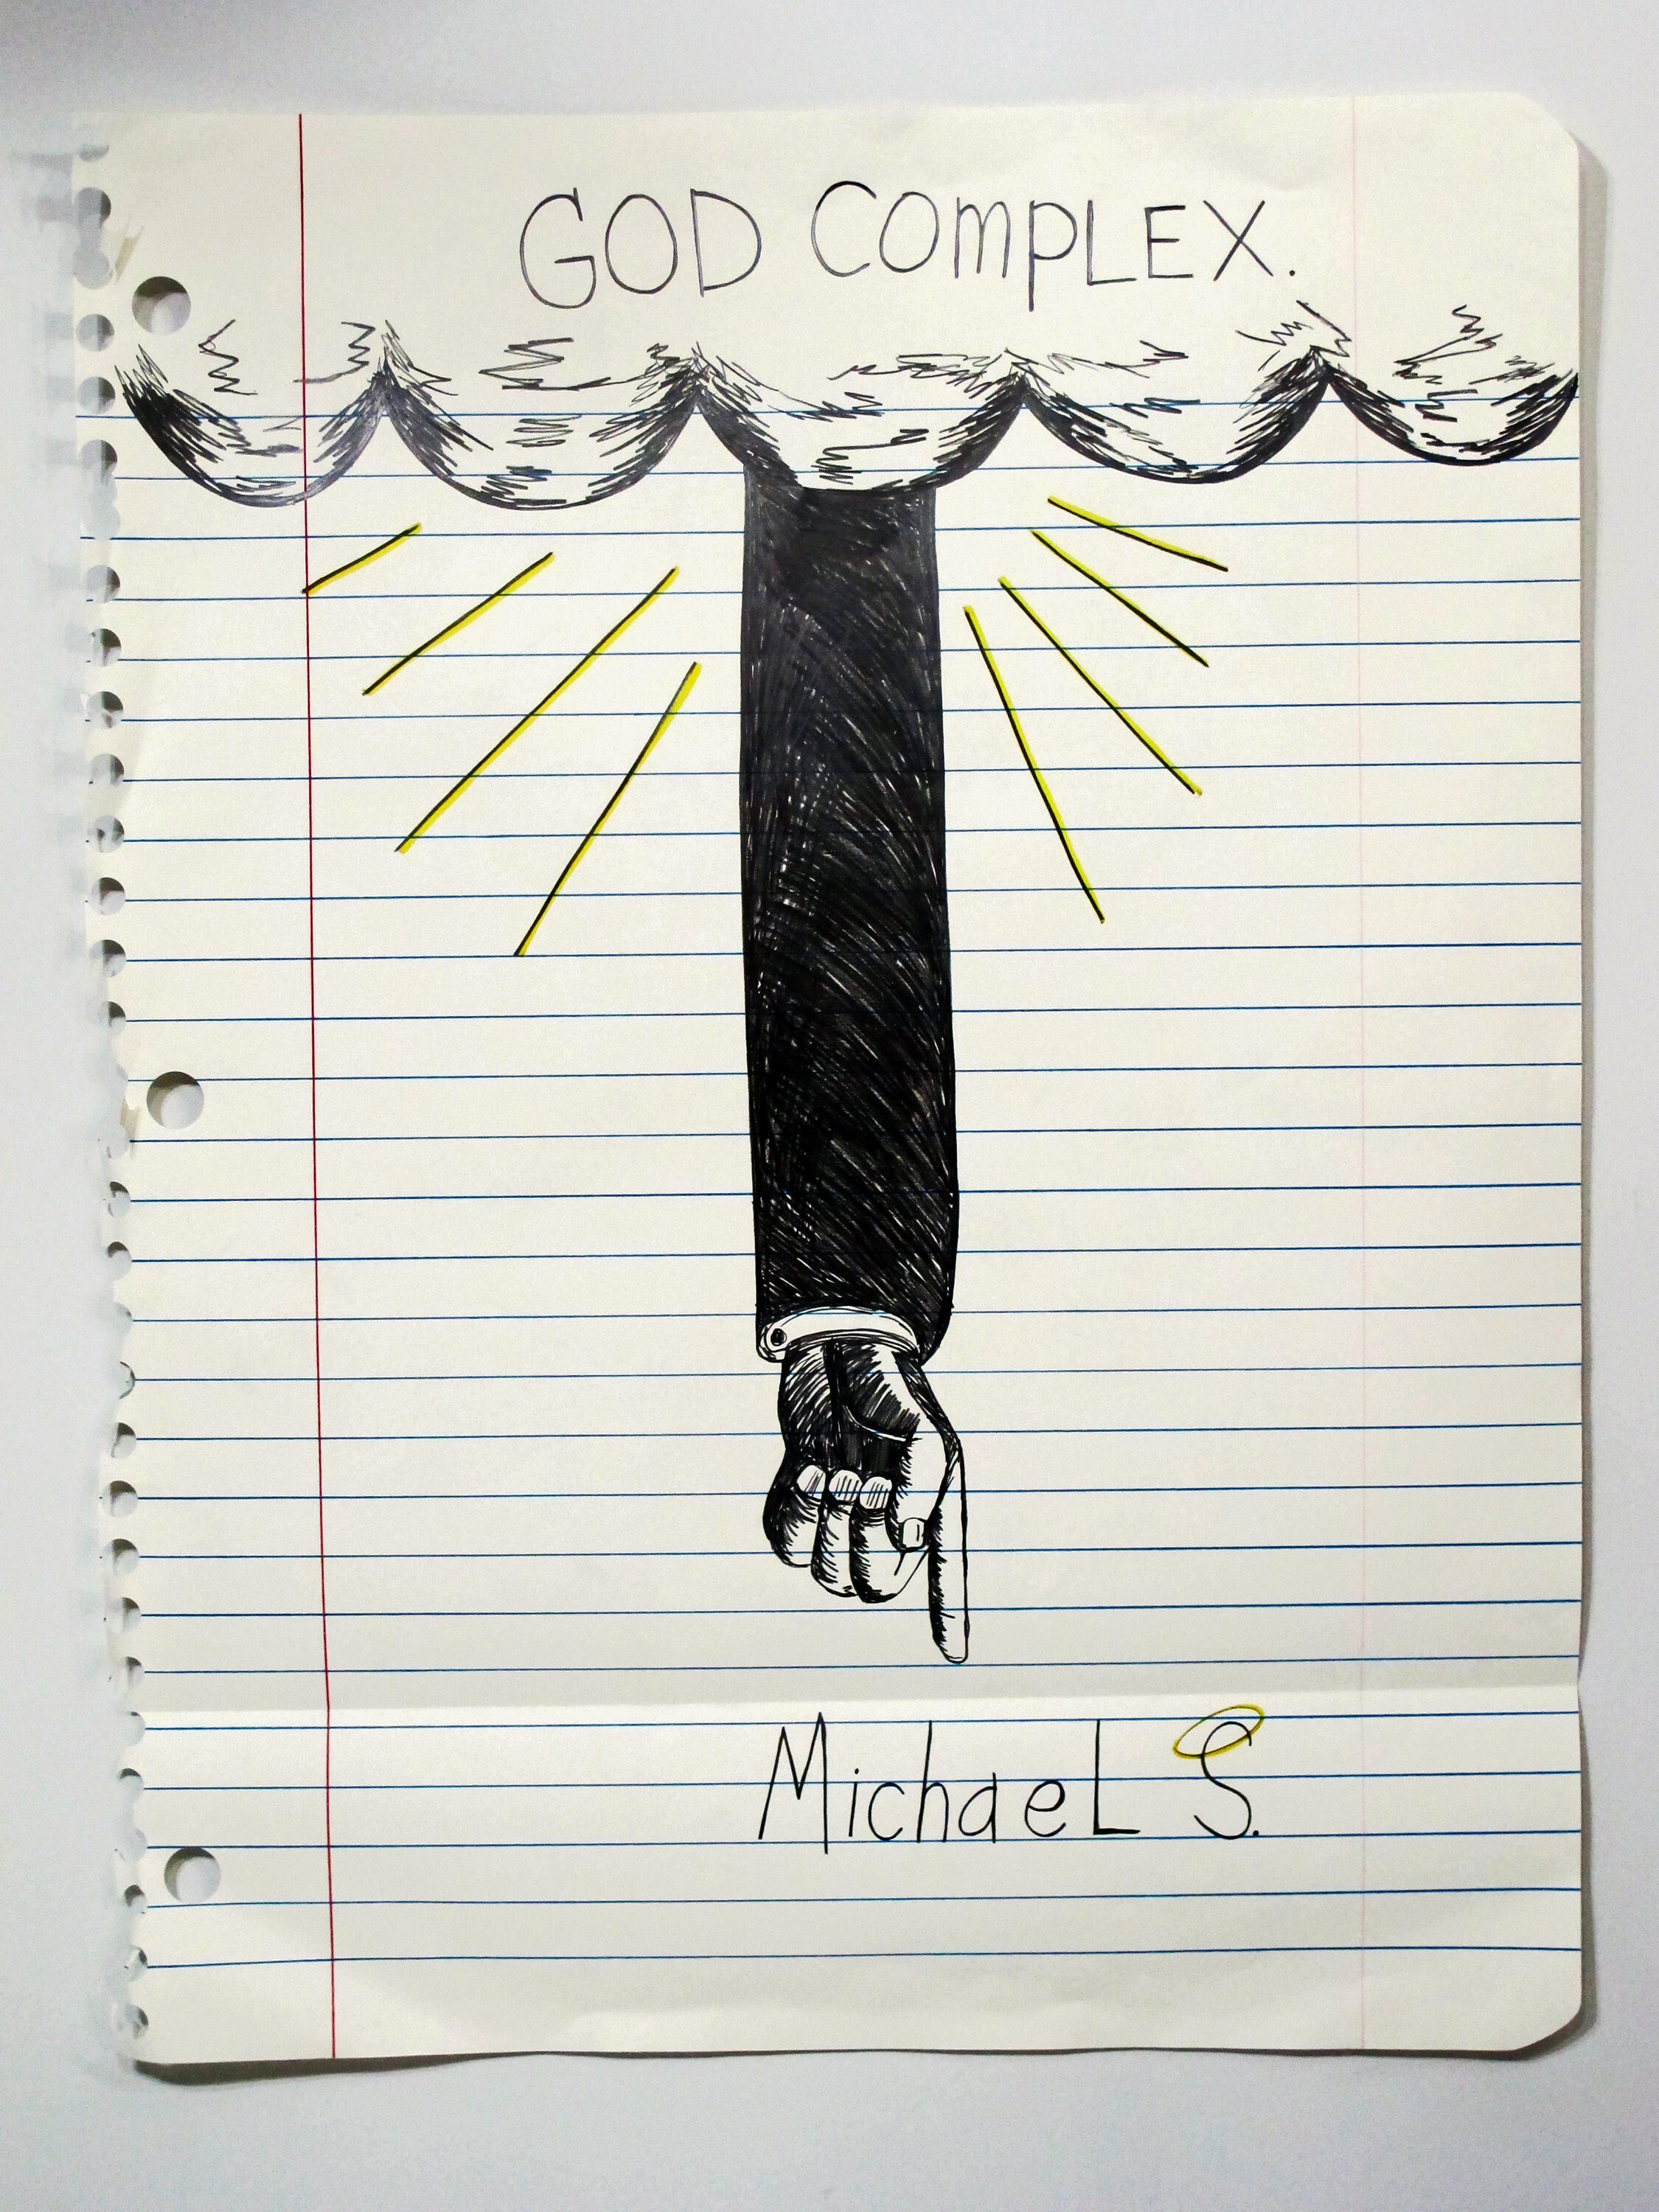  Michael Scoggins,  God Complex , 2014. Graphite, marker, colored pencil on paper , 67 x 51 in.   